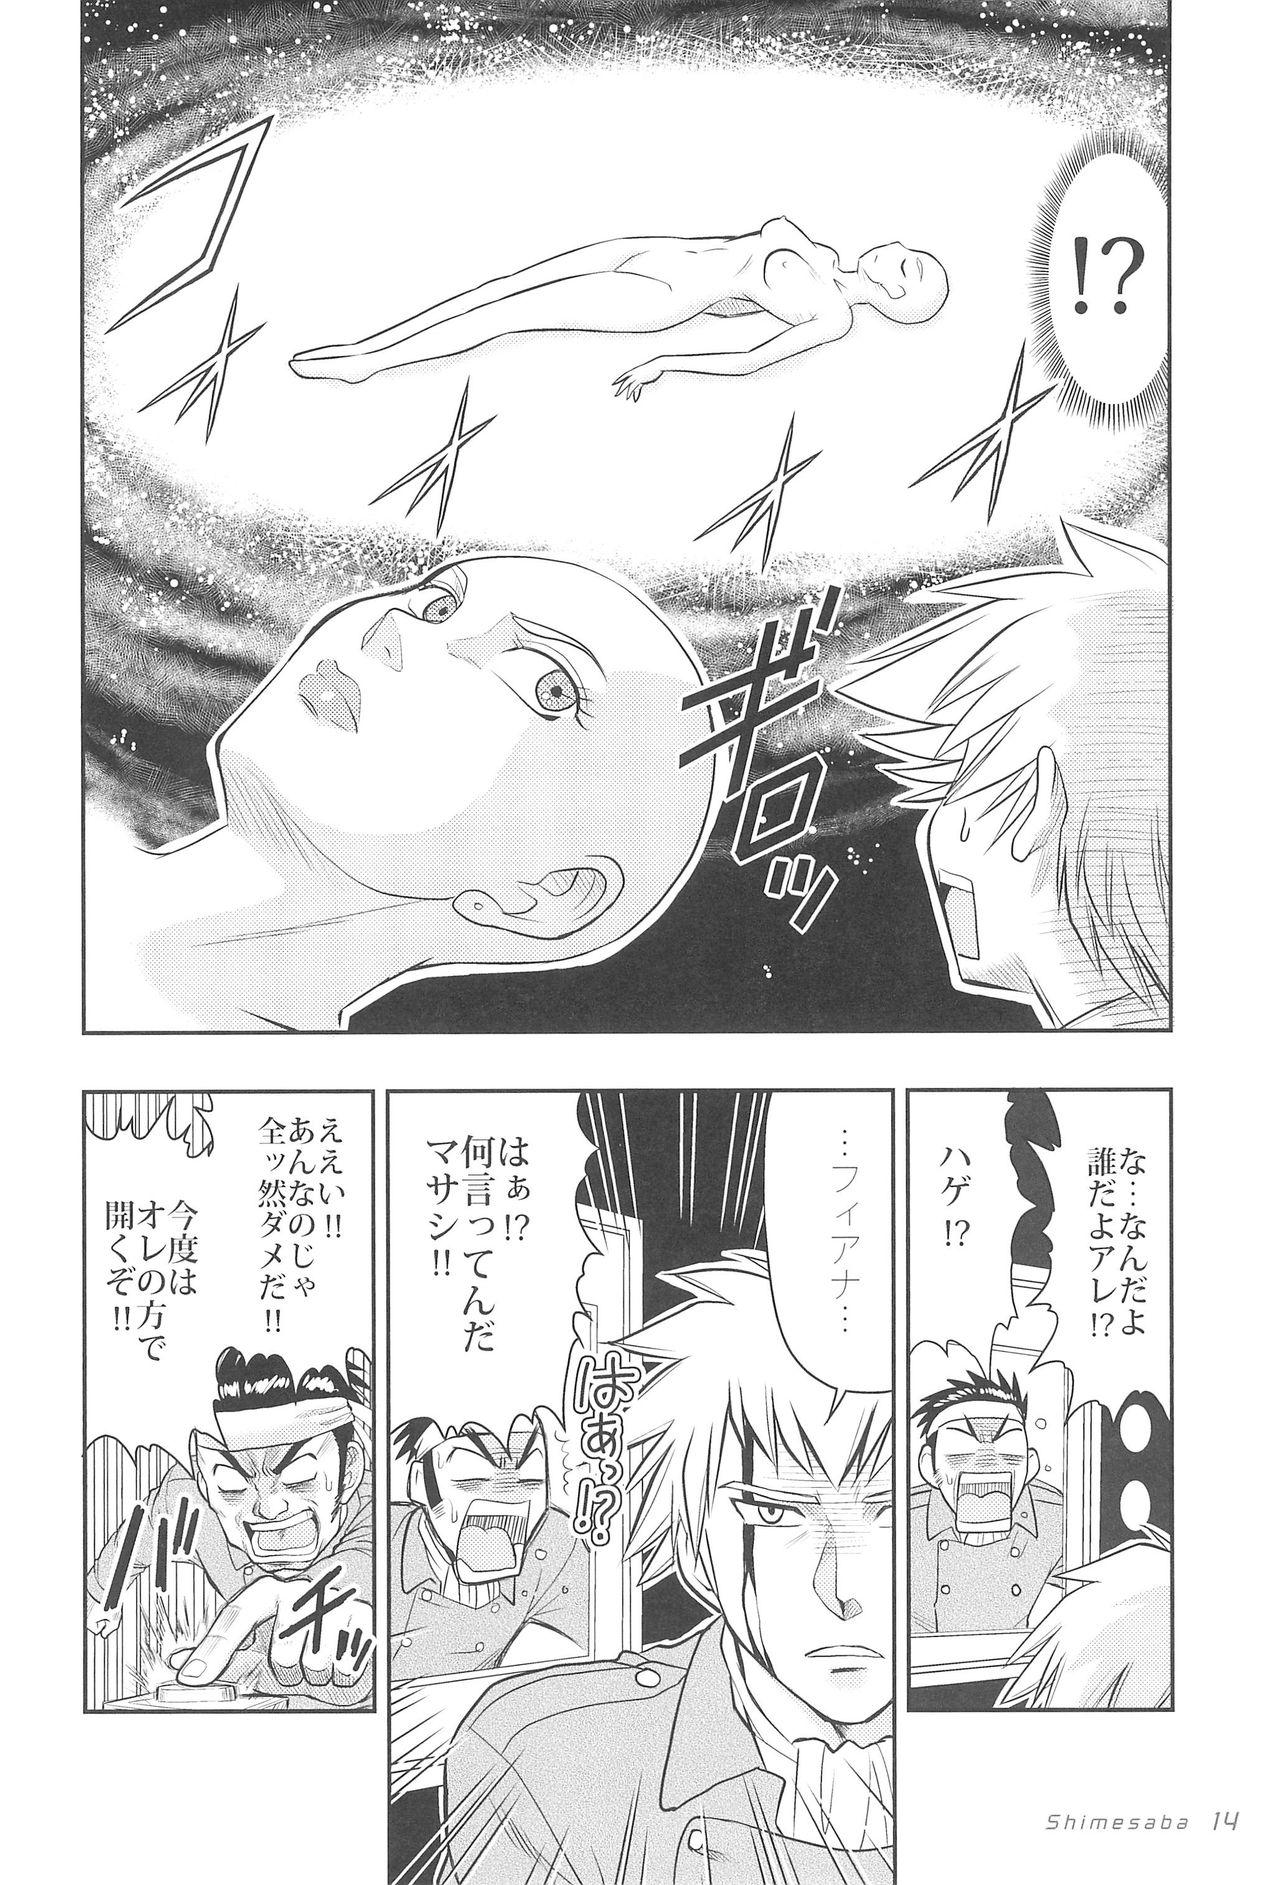 Erotica GUTAROBO ROBOT ANIME GIRLS FANBOOK - Gundam Monster Dick - Page 14